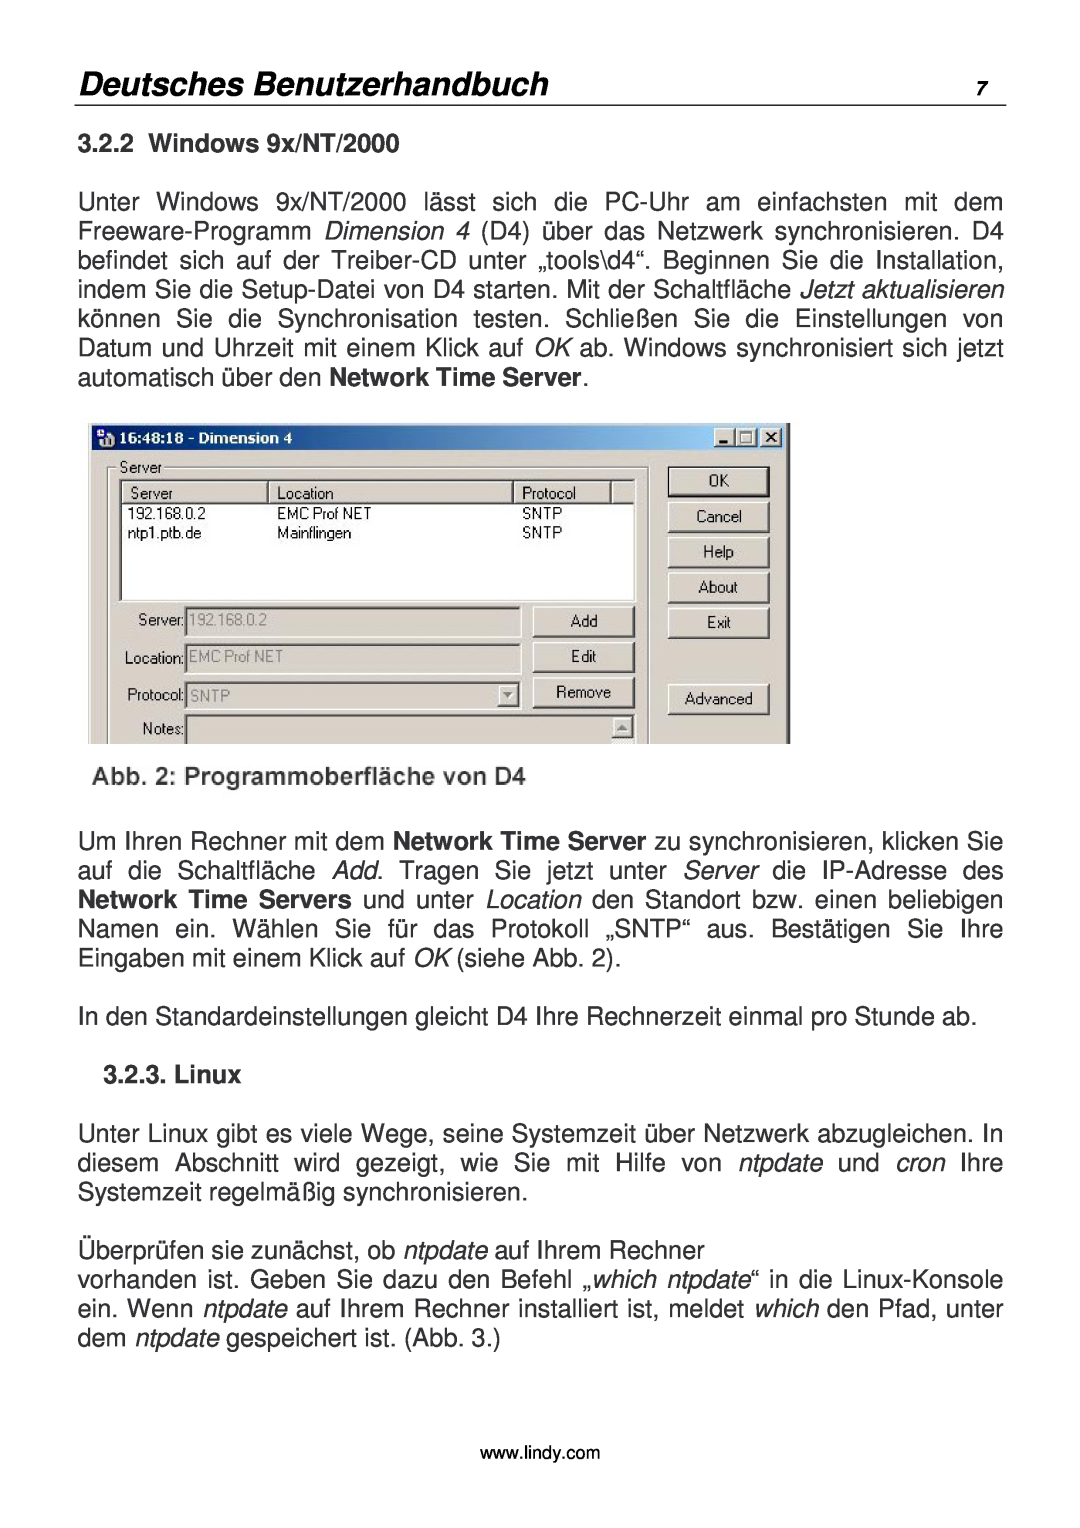 Lindy 20988 manual Deutsches Benutzerhandbuch, Windows 9x/NT/2000, Linux 